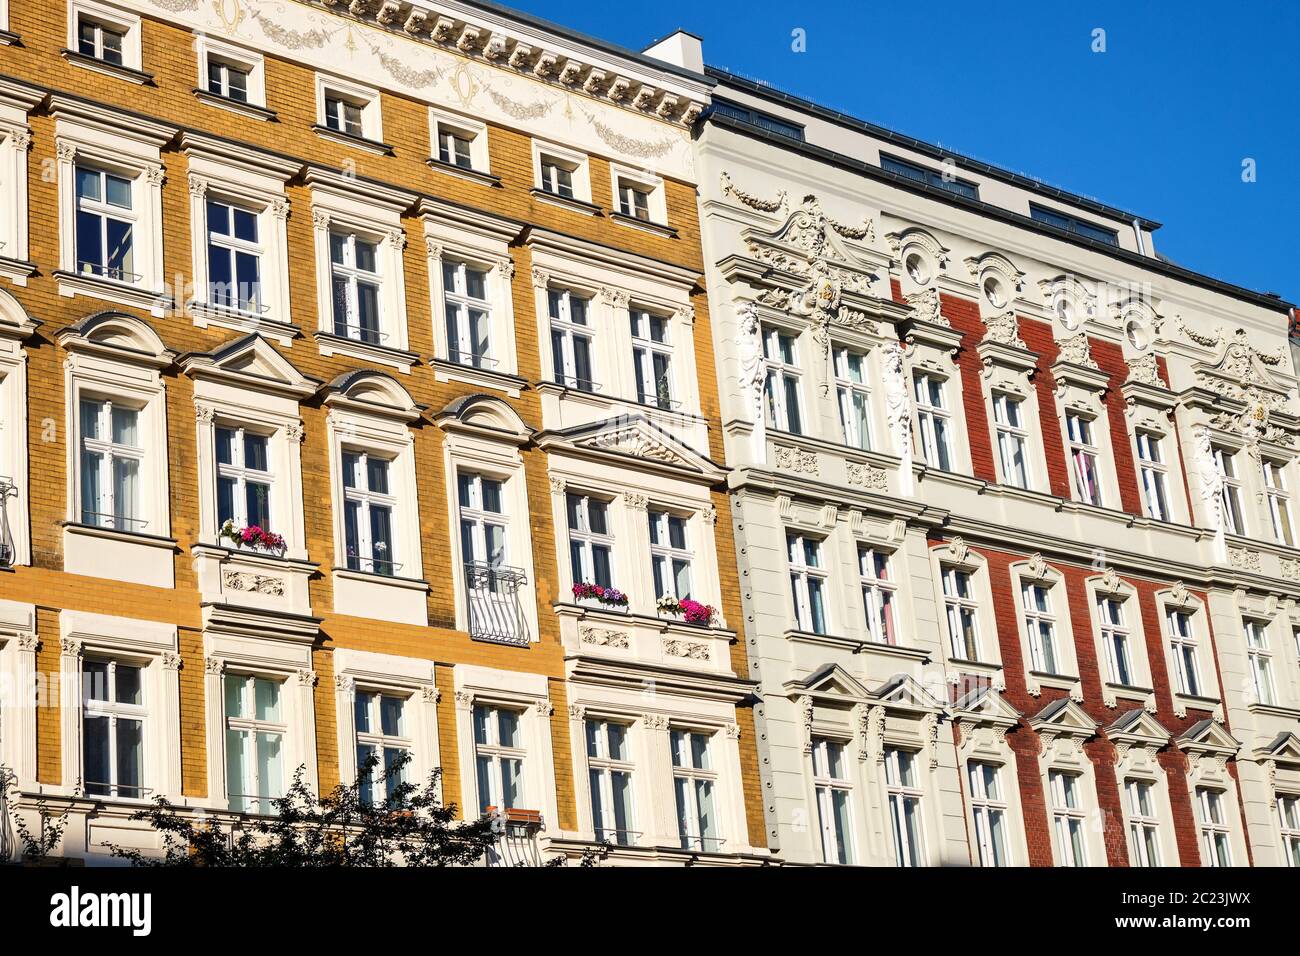 Façades de certains immeubles anciens rénovés en vu de Prenzlauer Berg à Berlin, Allemagne Banque D'Images